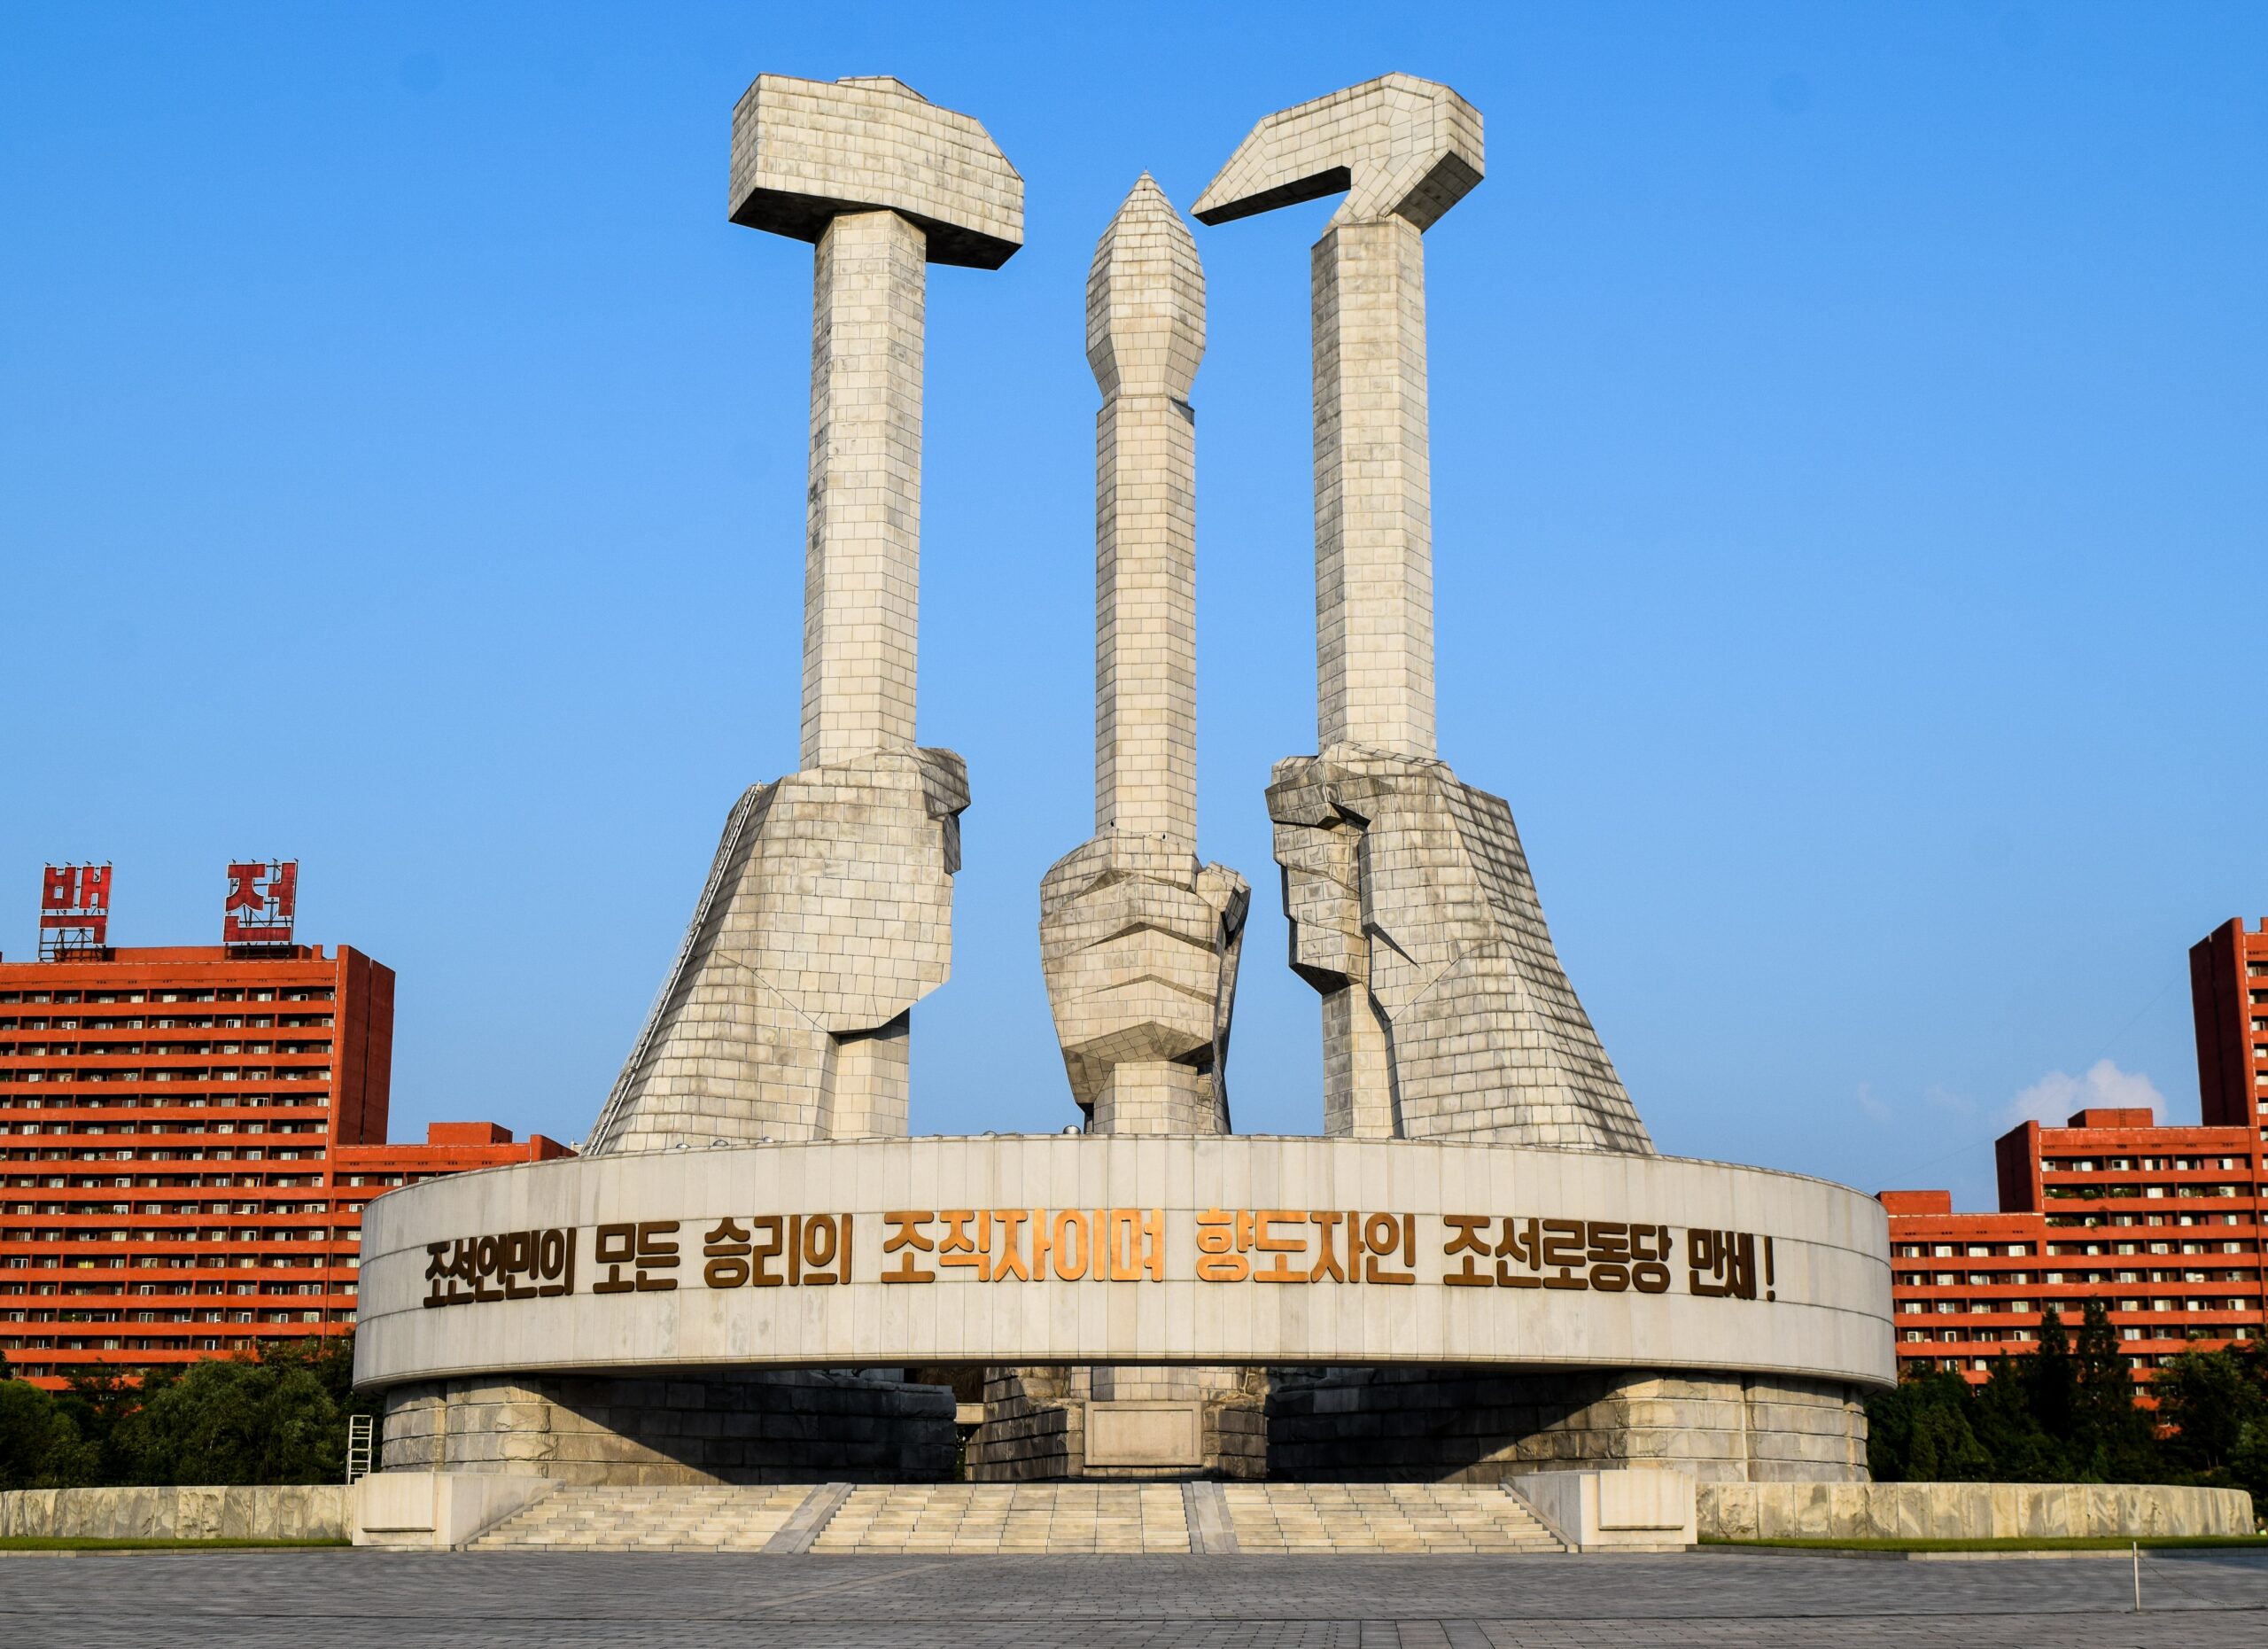 Can I visit North Korea